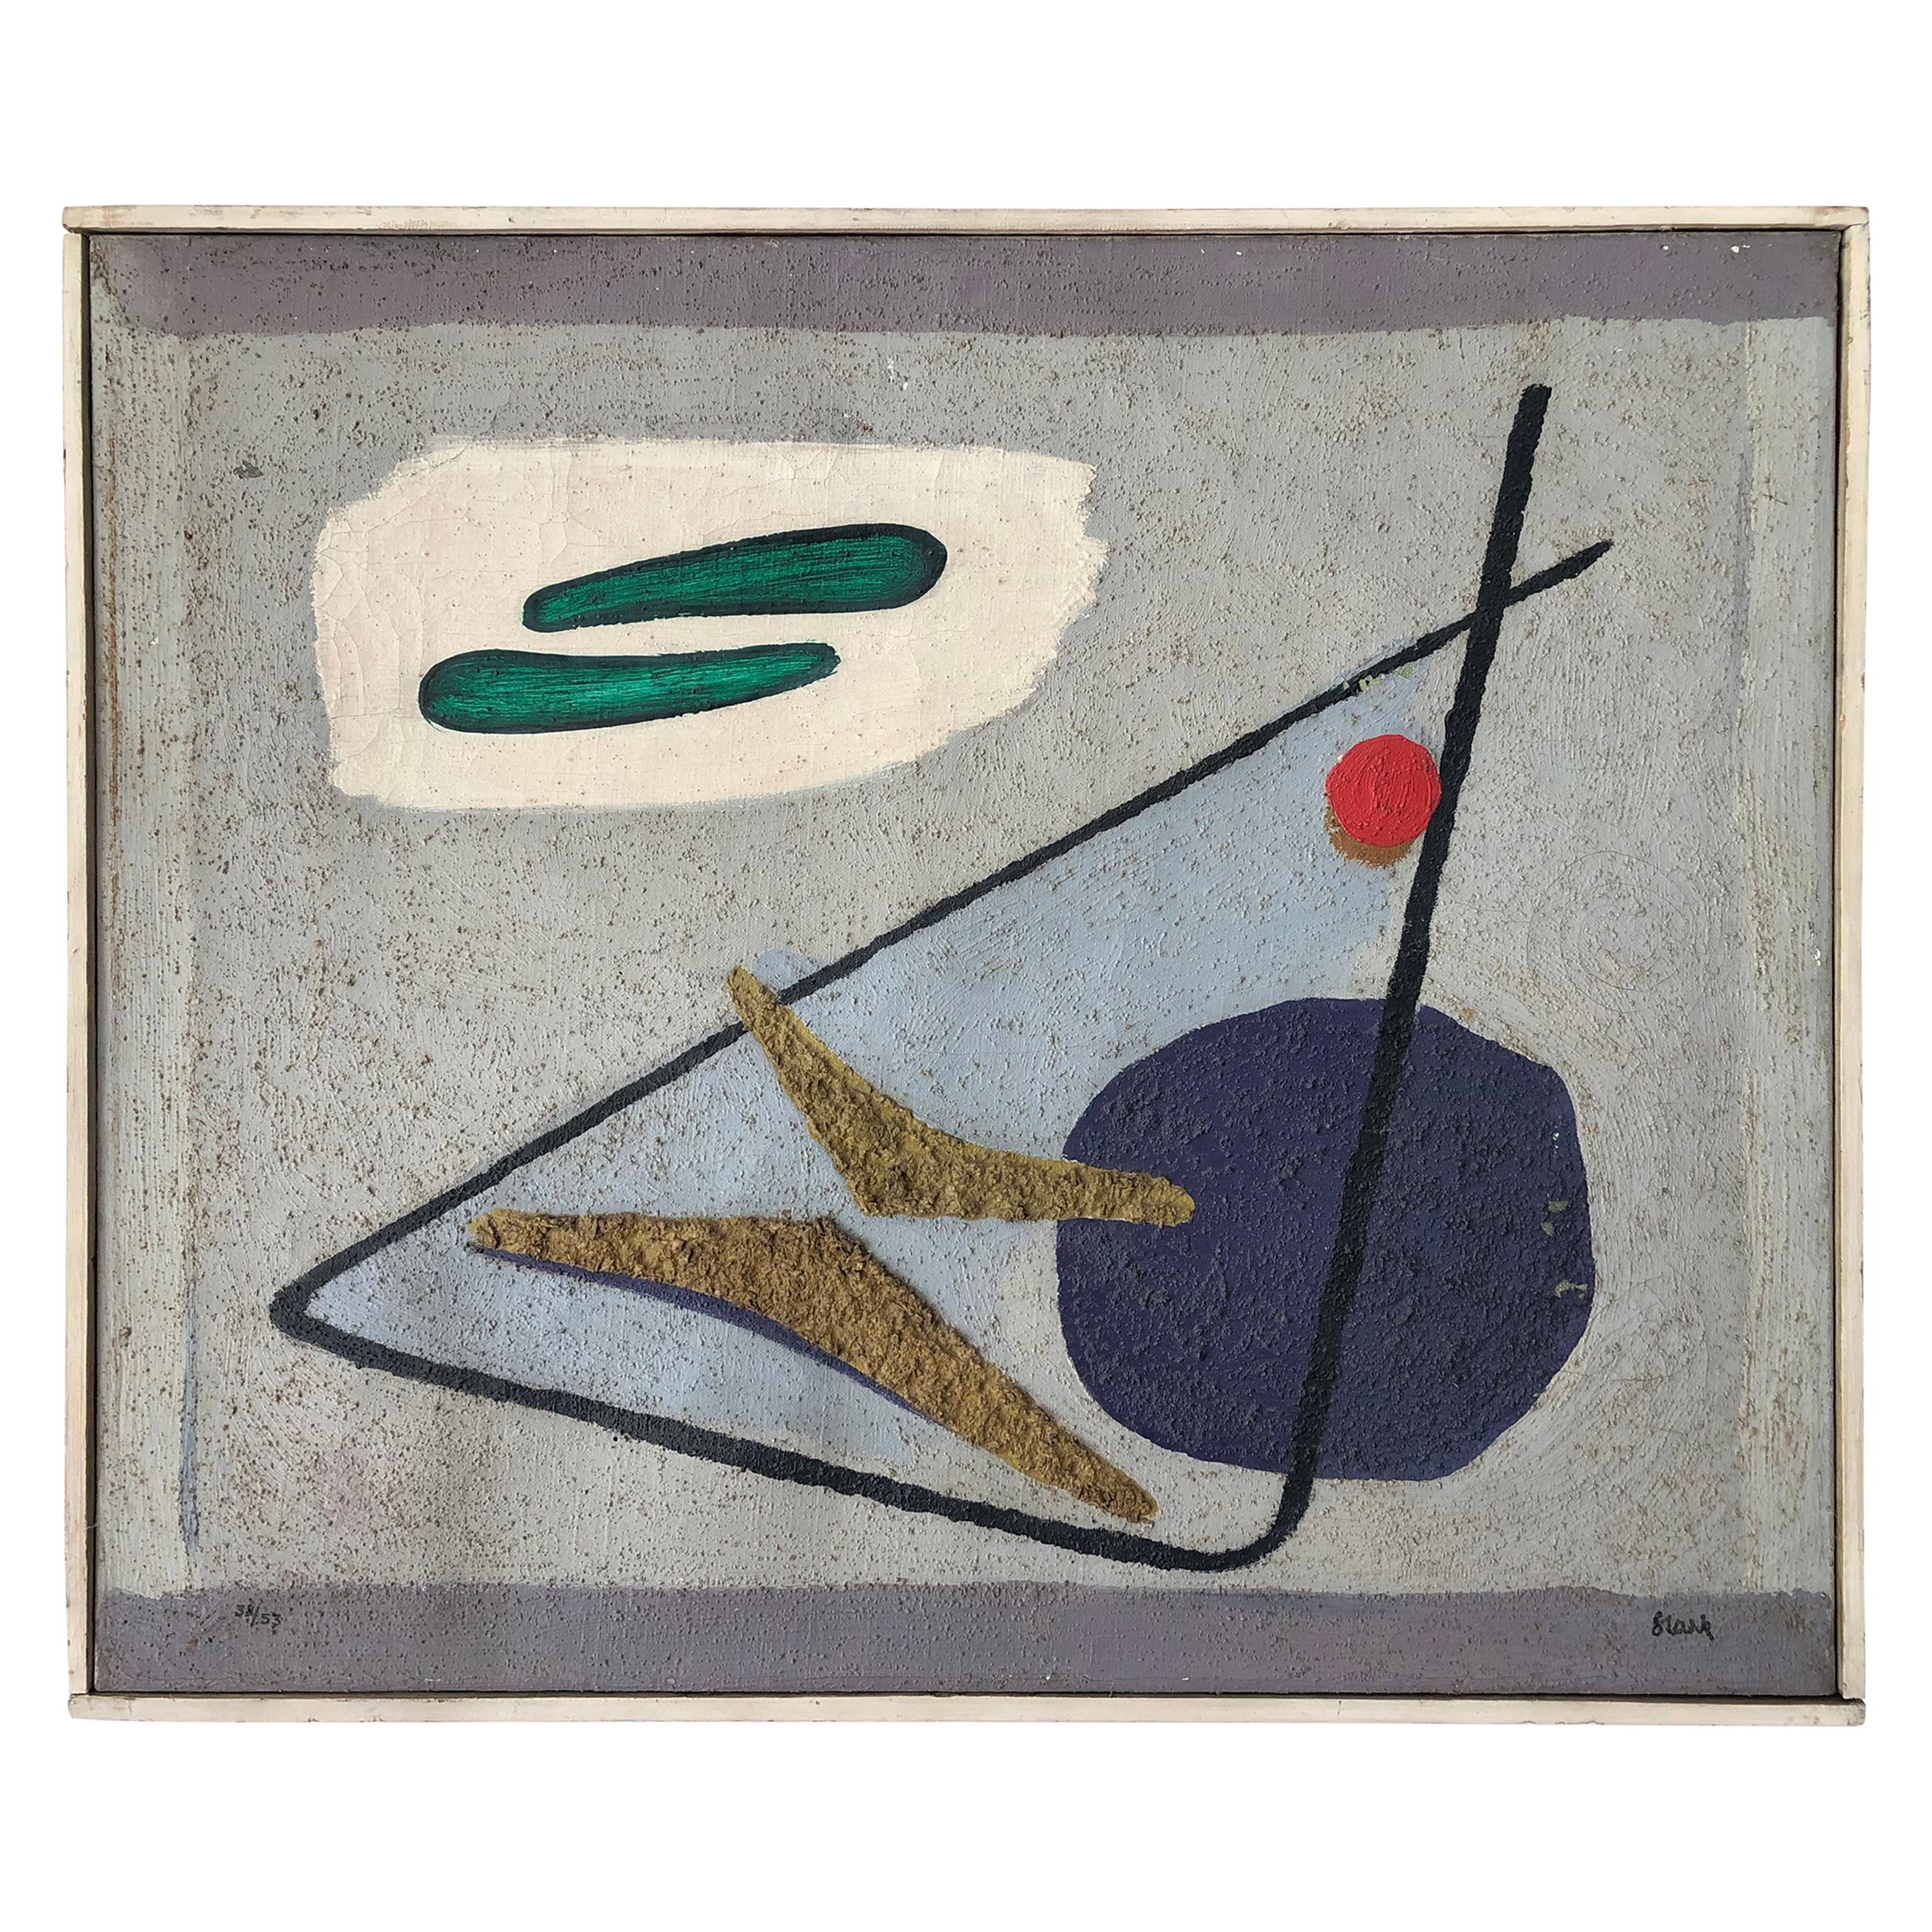 Gustl Stark, Abstraktes Ölgemälde auf Leinwand, 1953